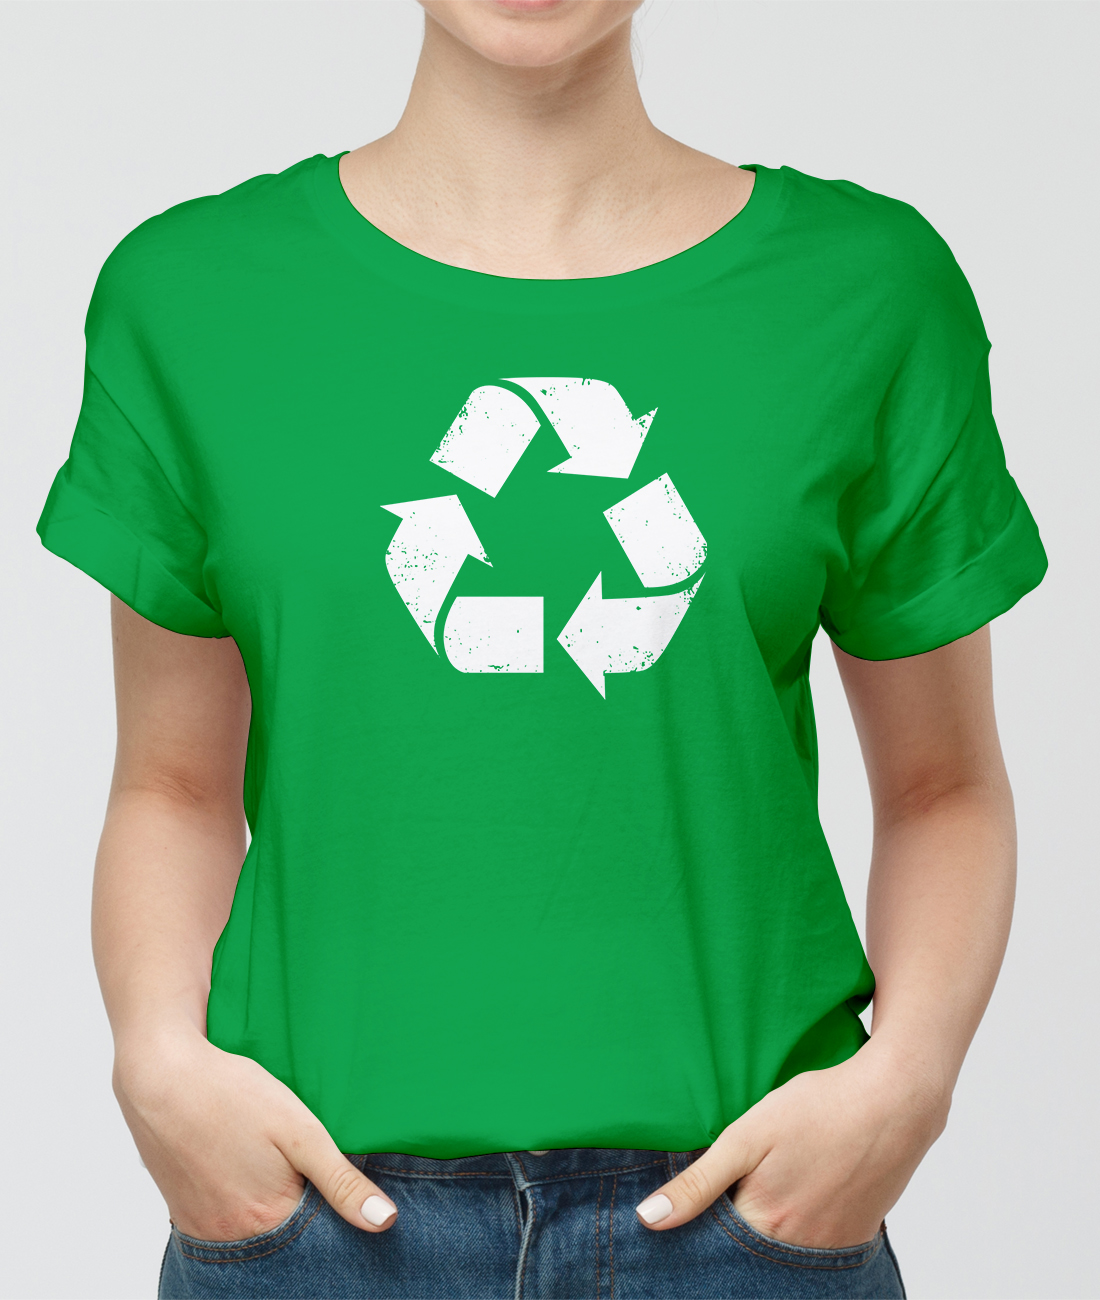 Recycling Tshirt